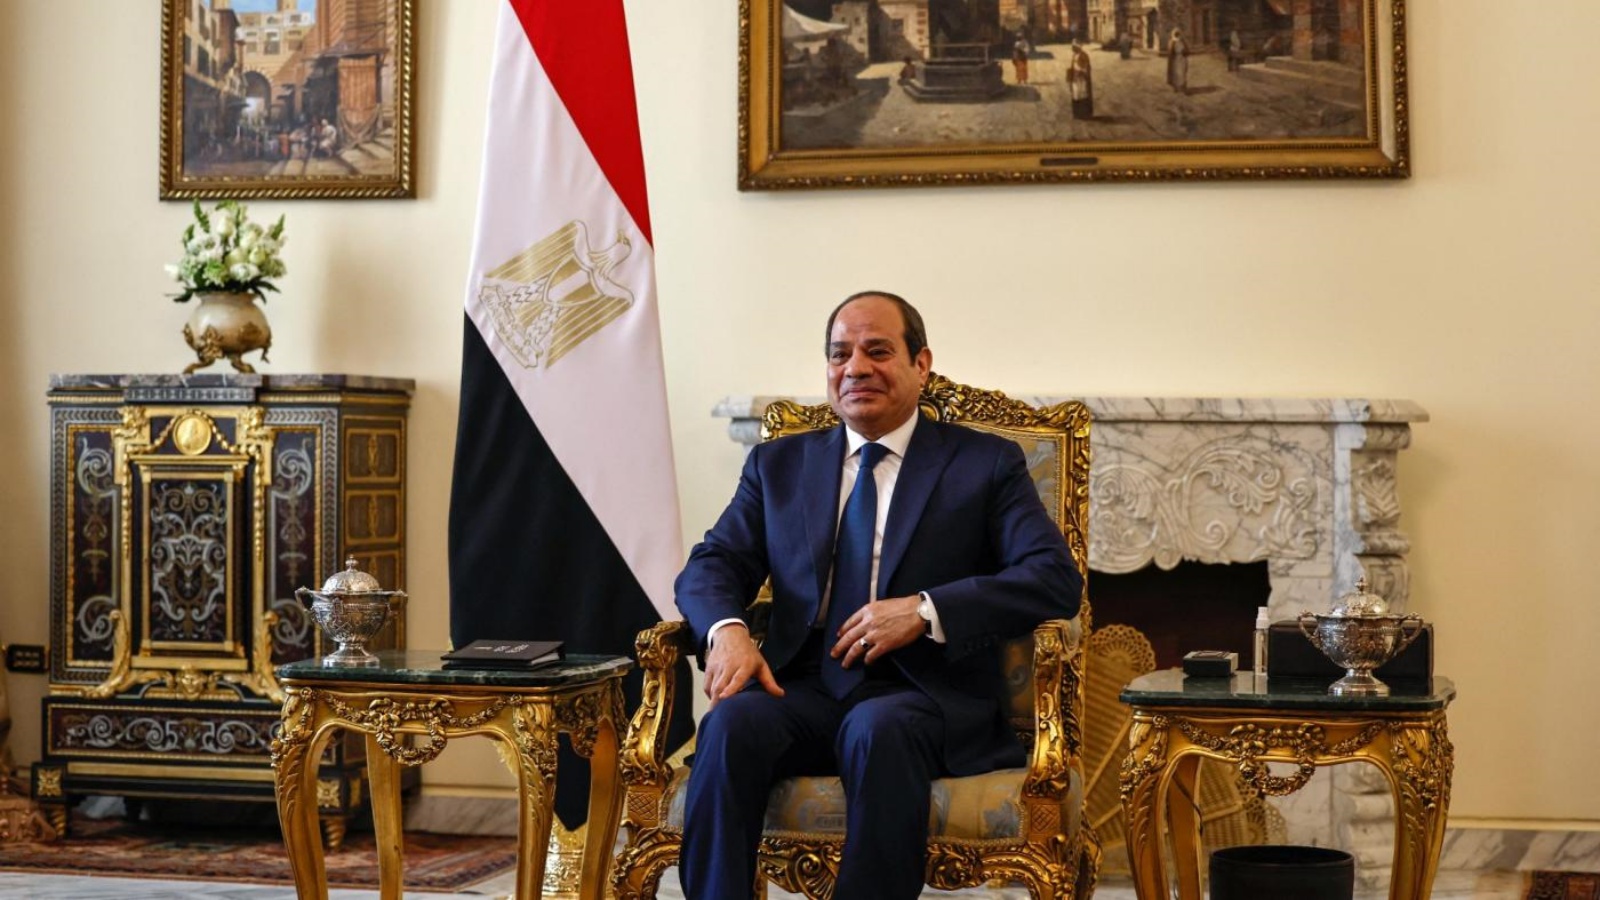 الرئيس المصري عبد الفتاح السيسي في قصر الاتحادية الرئاسي في القاهرة يوم 30 يناير 2023